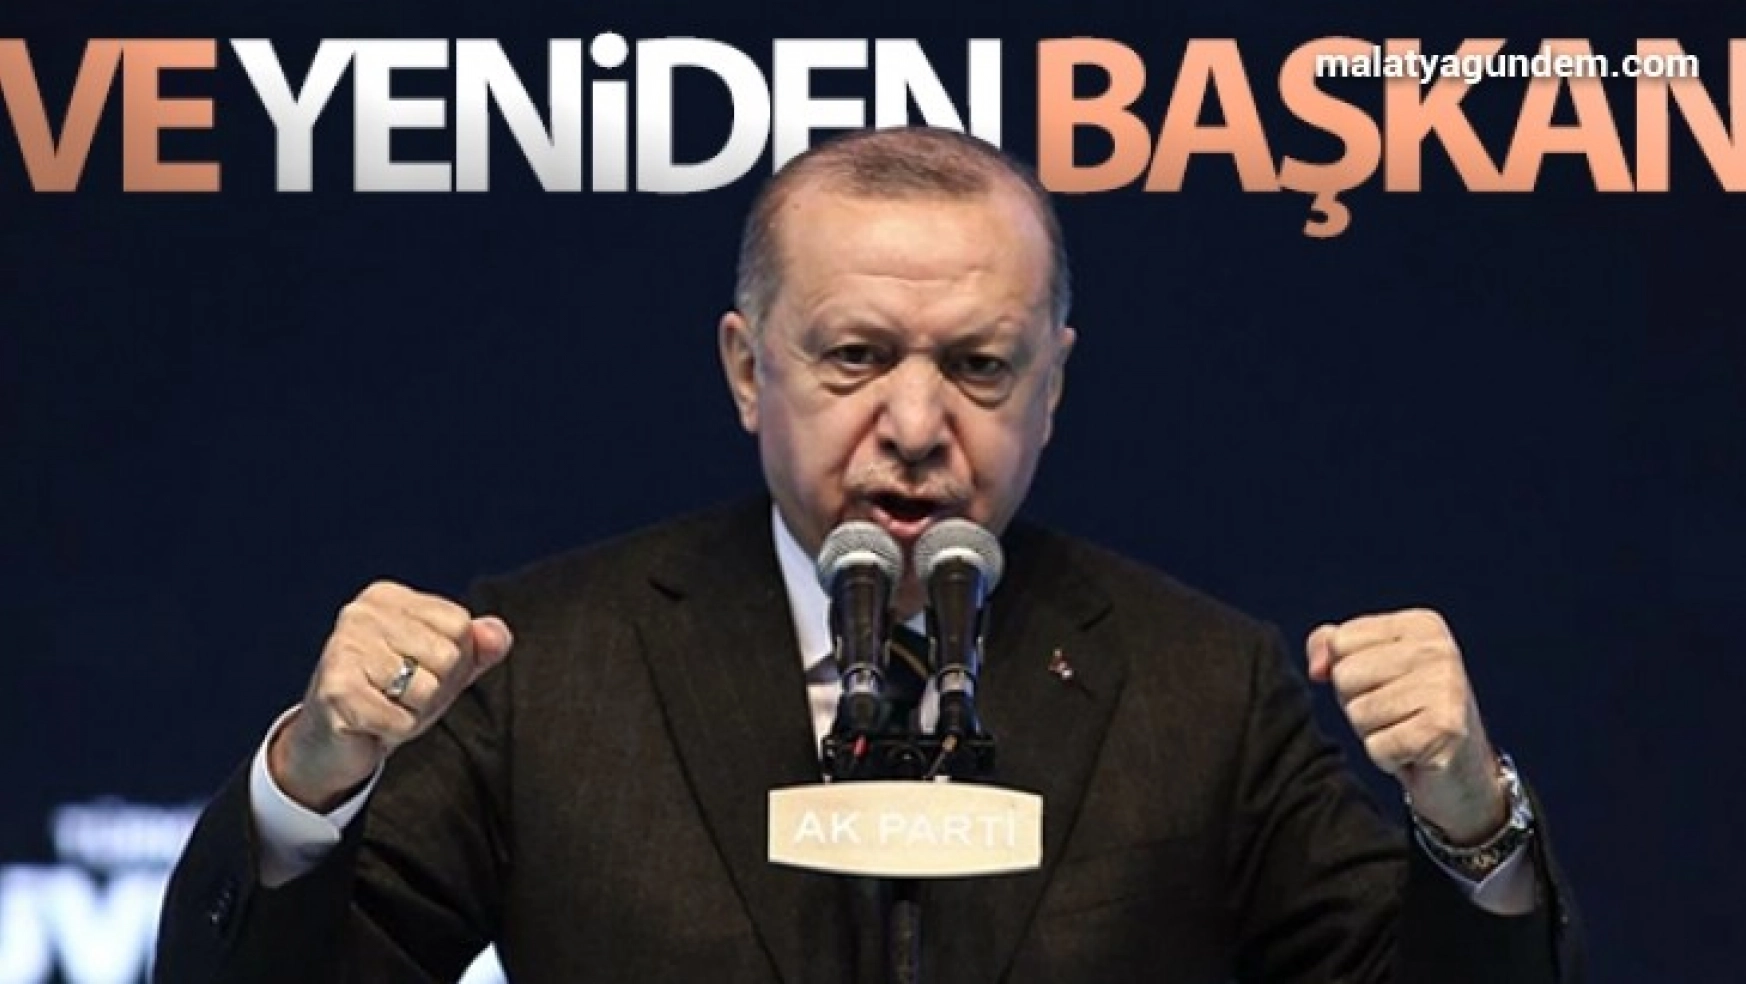 Cumhurbaşkanı Recep Tayyip Erdoğan, yeniden AK Parti Genel Başkanı seçildi